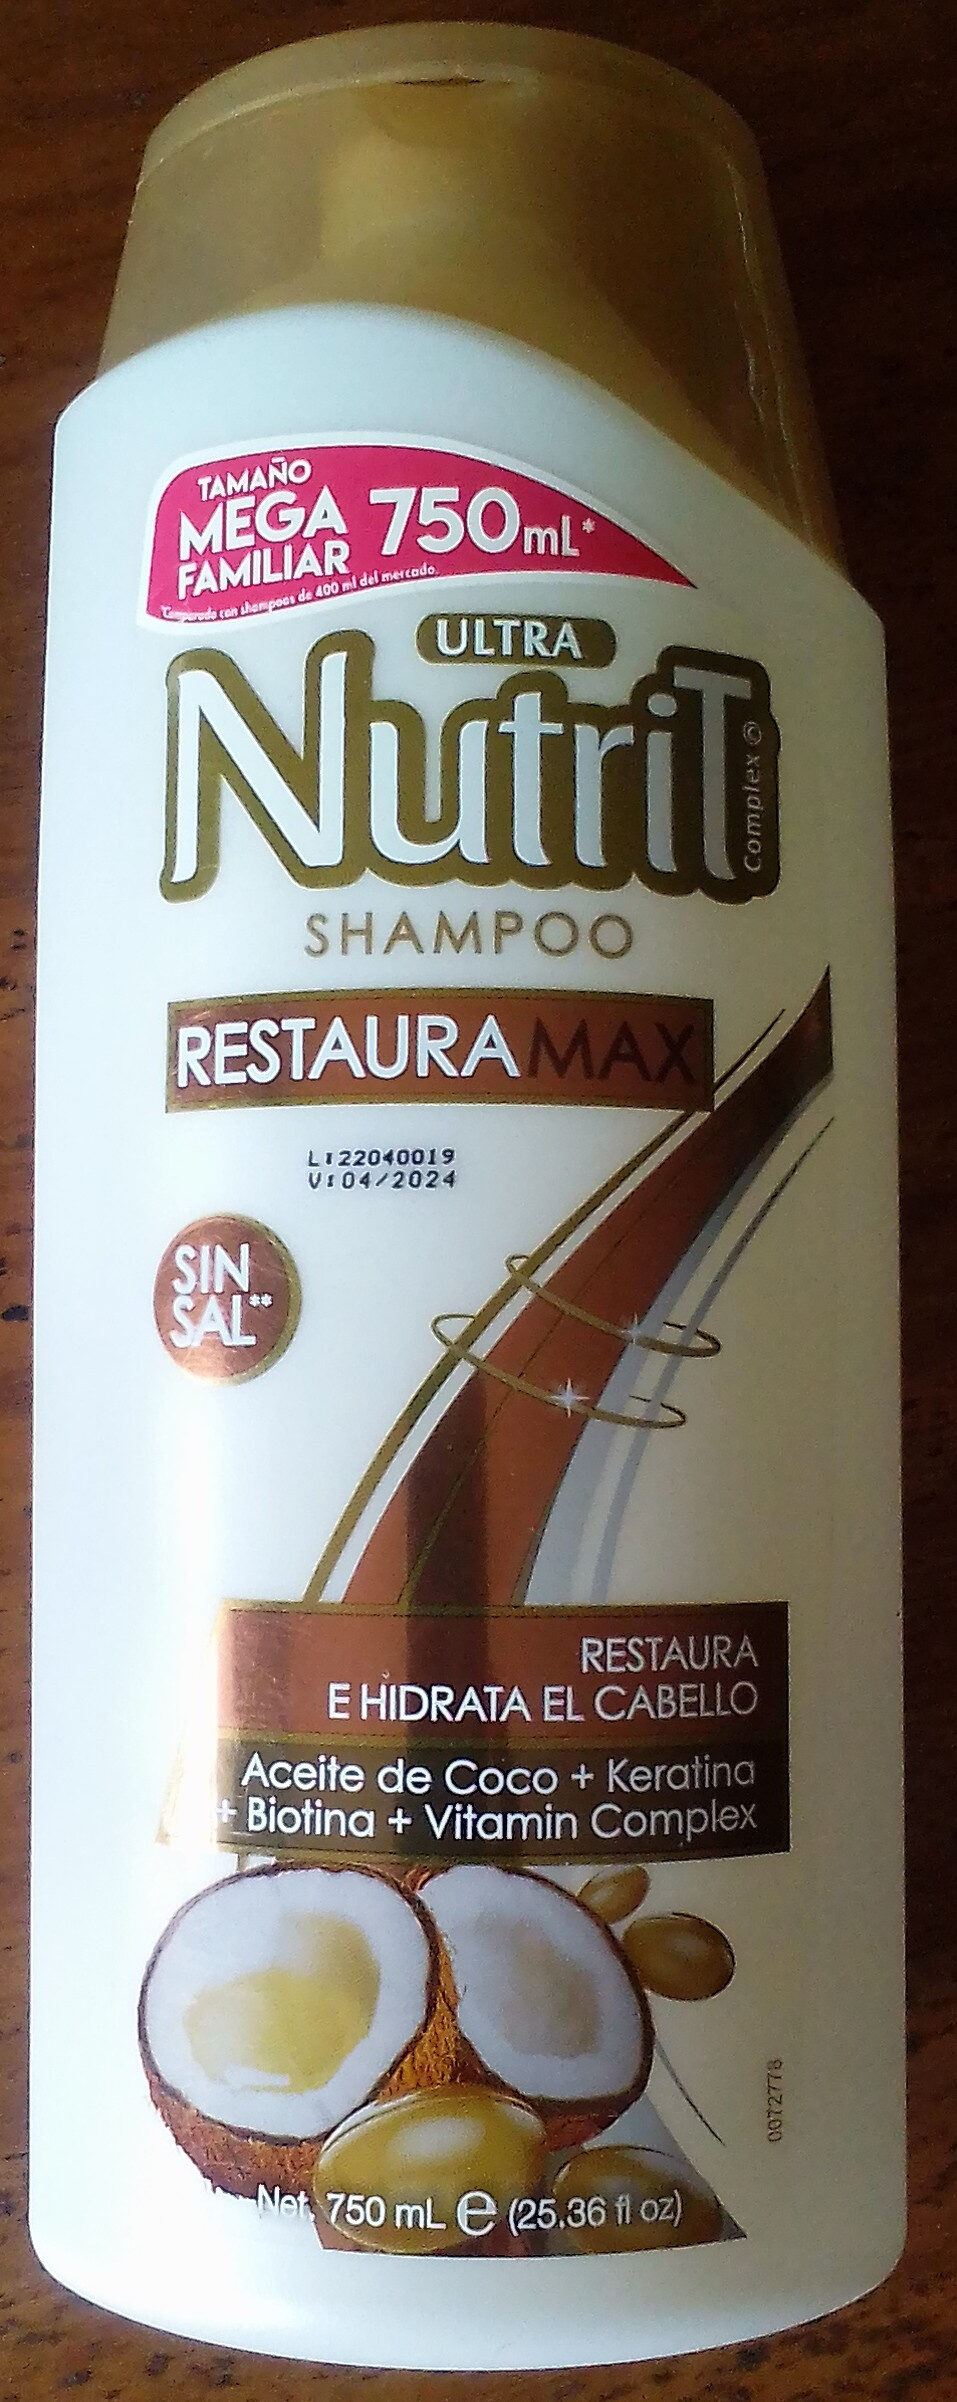 Ultra Nutrit Shampoo Restaura Max - Product - en